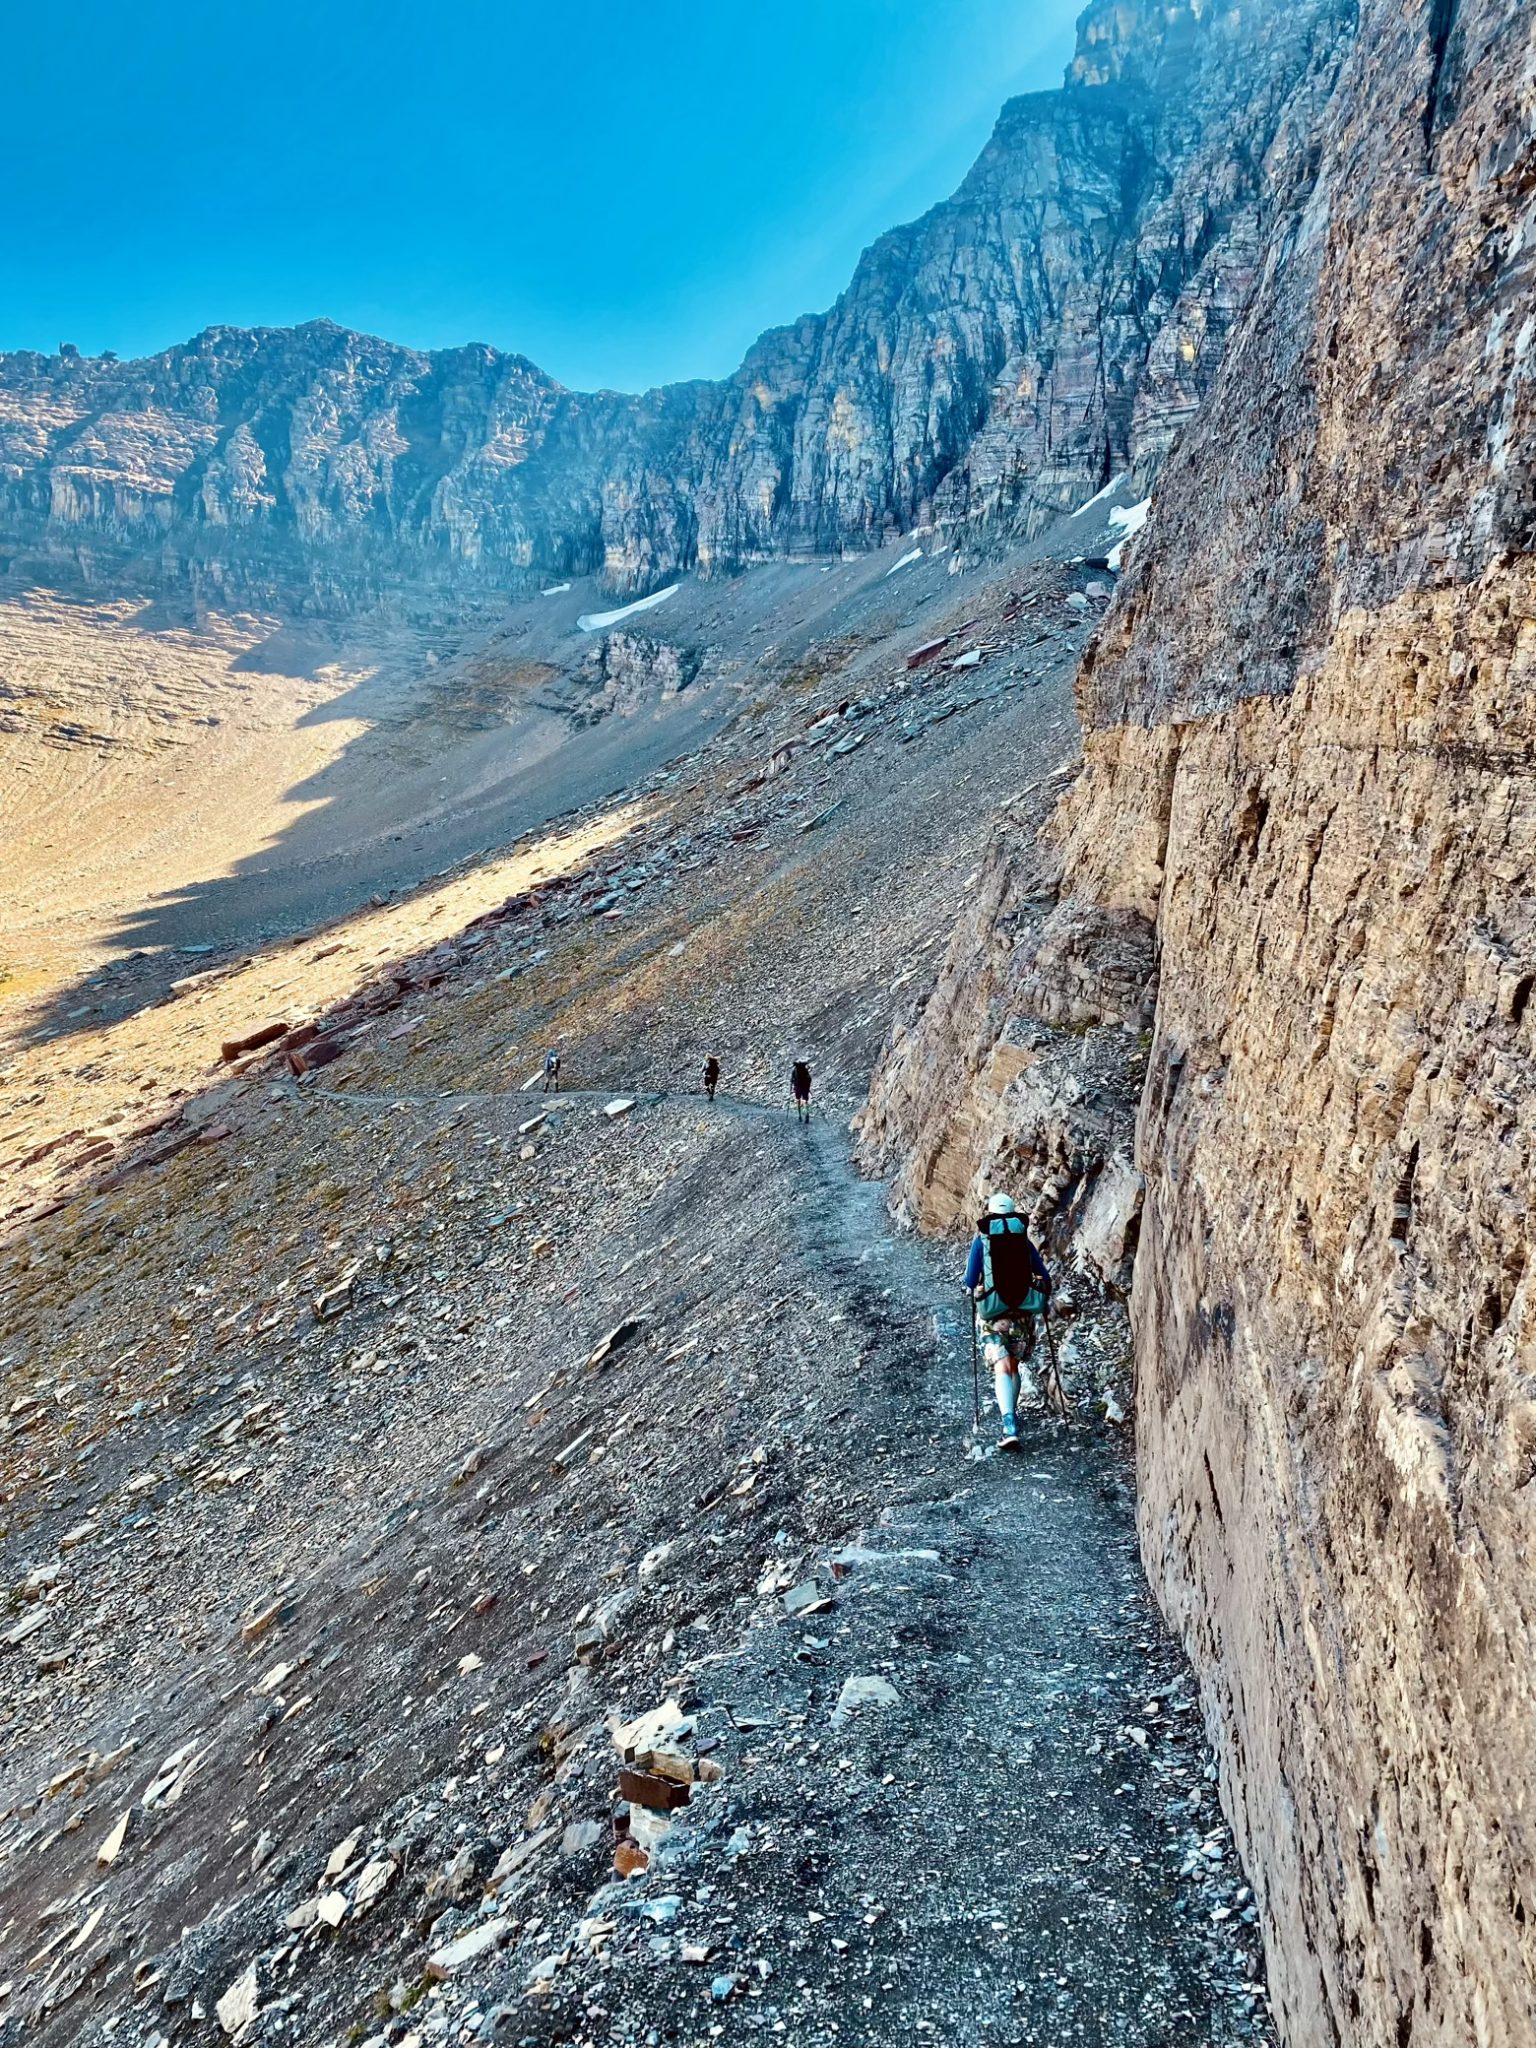 Trail clinging to a wall beneath Iceberg Peak